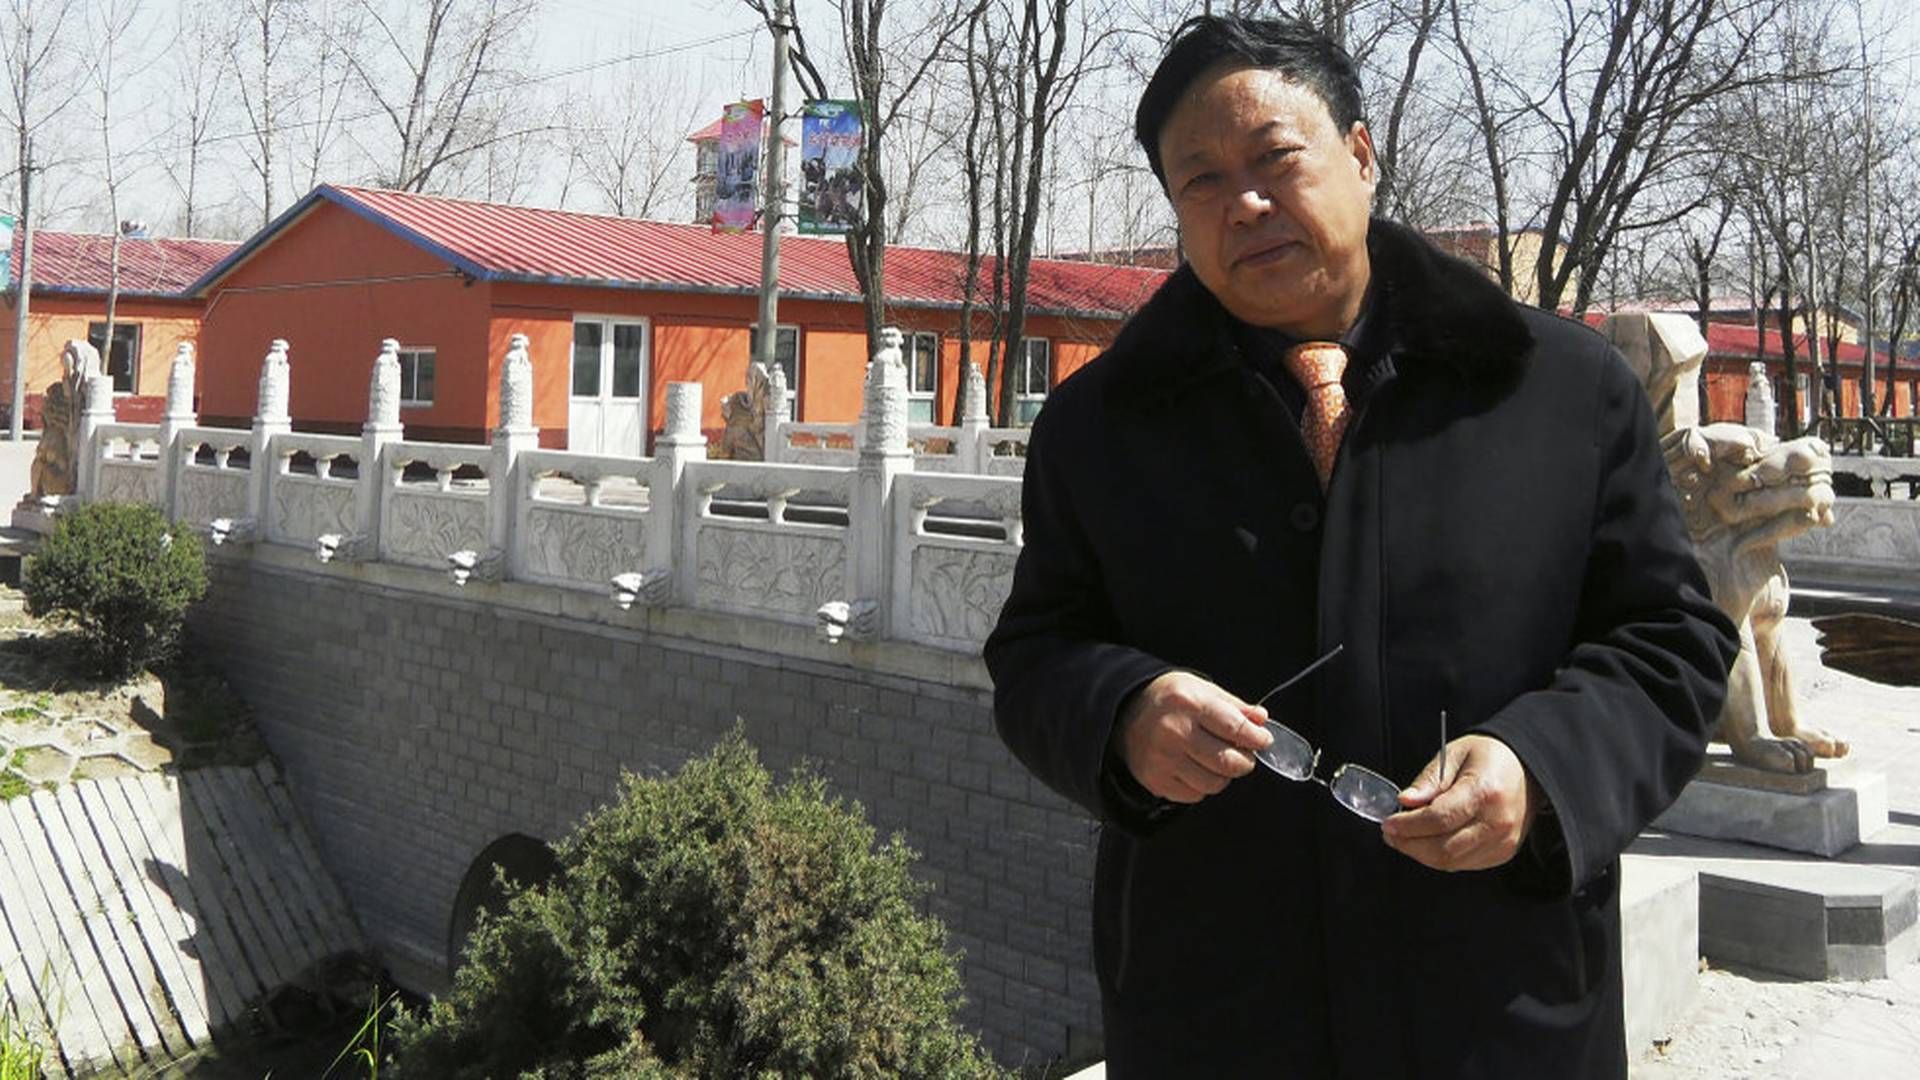 Den fremtrædende kinesiske svineproducent Sun Dawu er idømt 18 års fængsel. Han var blandt andet tiltalt for at have organiseret et angreb på embedsfolk og for at "fremprovokere" ballade. Foto er fra april 2020. | Foto: Uncredited/Ritzau Scanpix